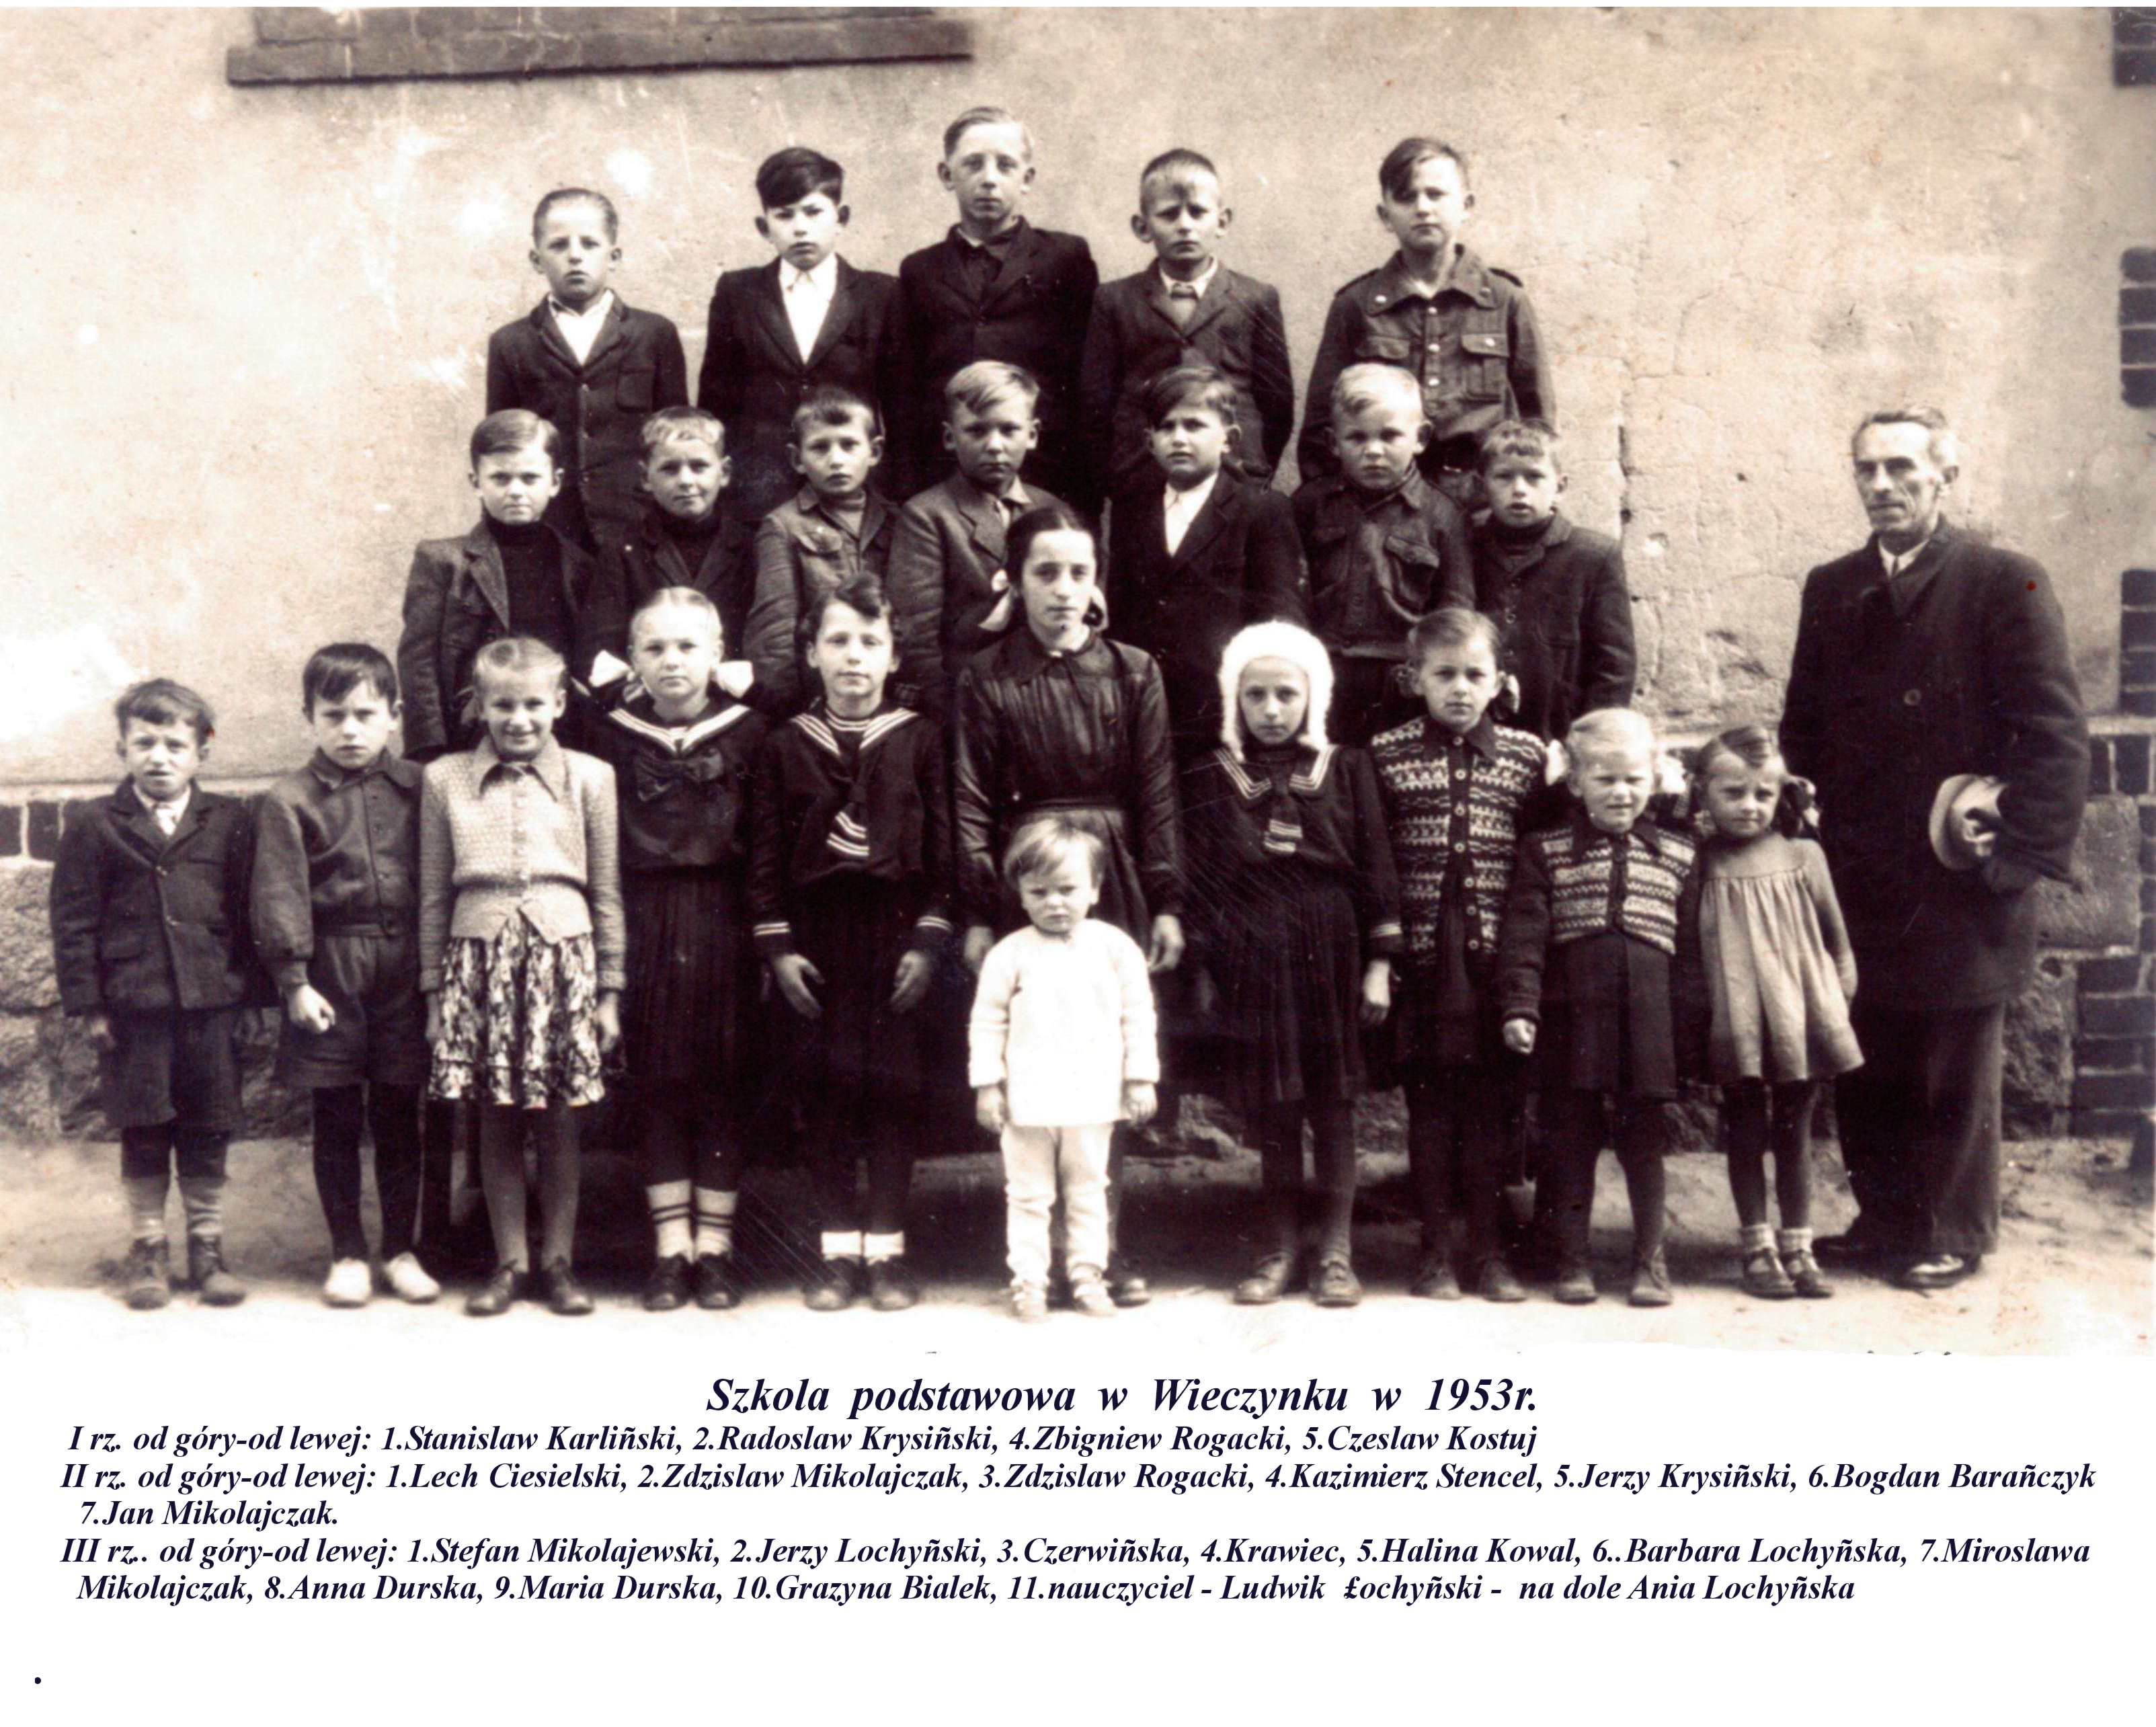 kronika wieczyna - aaja12-Szkoła podstawowa Wieczynek w 1953r.jpg